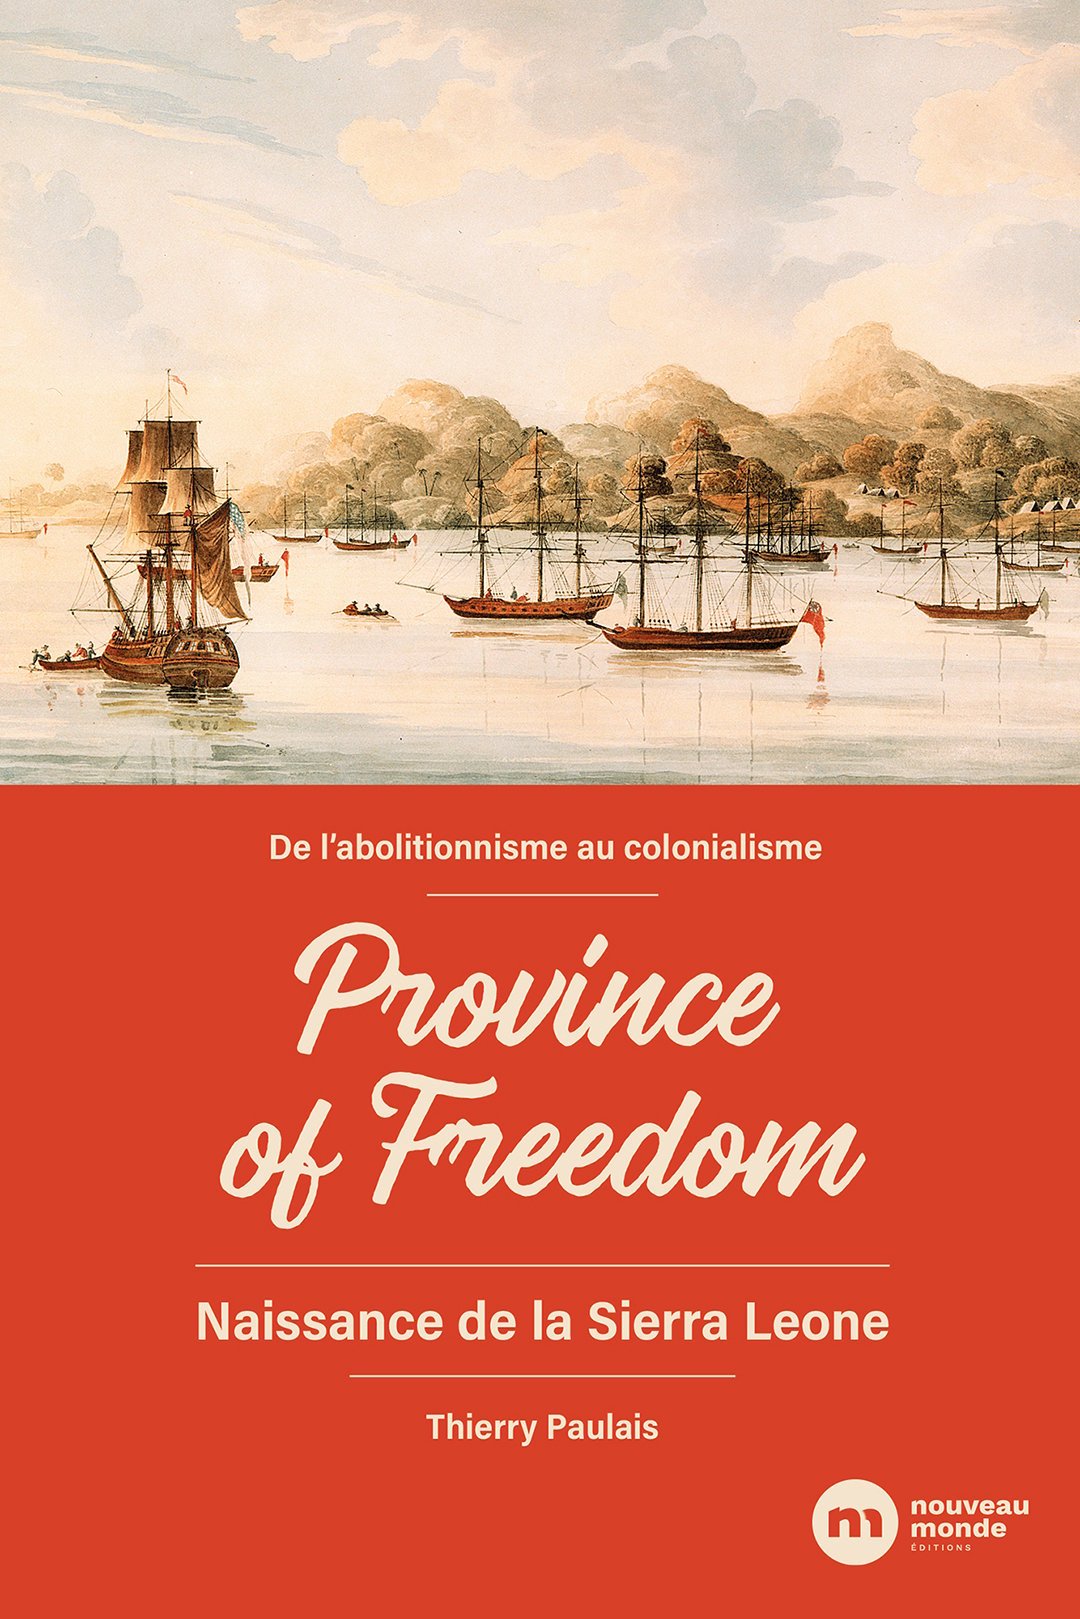 "De l'abolitionnisme au colonialisme – Province of Freedom – Naissance de la Sierra Leone" de Thierry Paulais (éd. Nouveau monde) &copy; DR